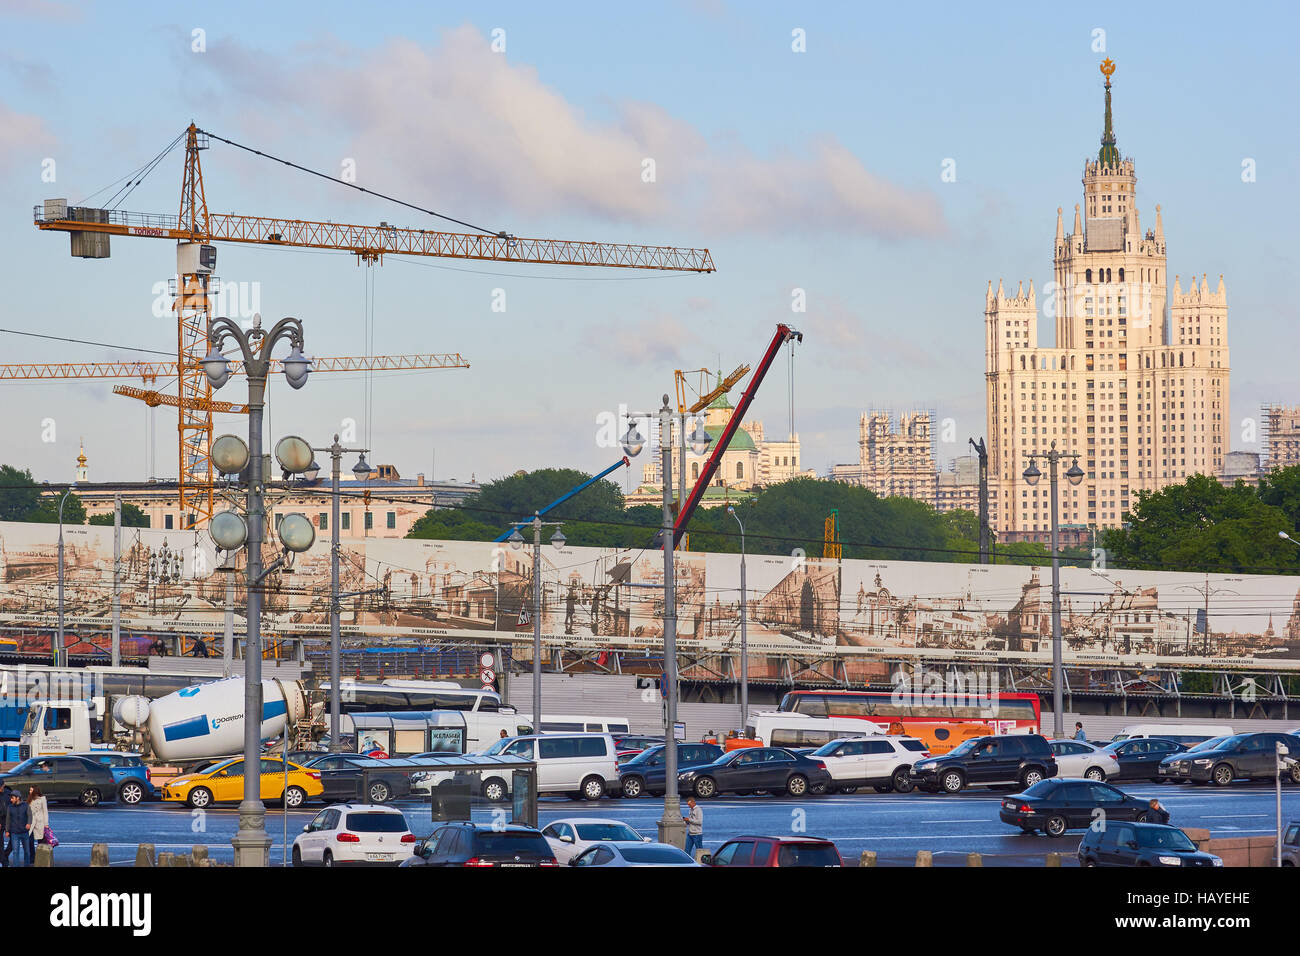 Ministero degli Affari esteri della Russia la costruzione di un grattacielo stalinista costruito nel 1953 Mosca Russia Foto Stock